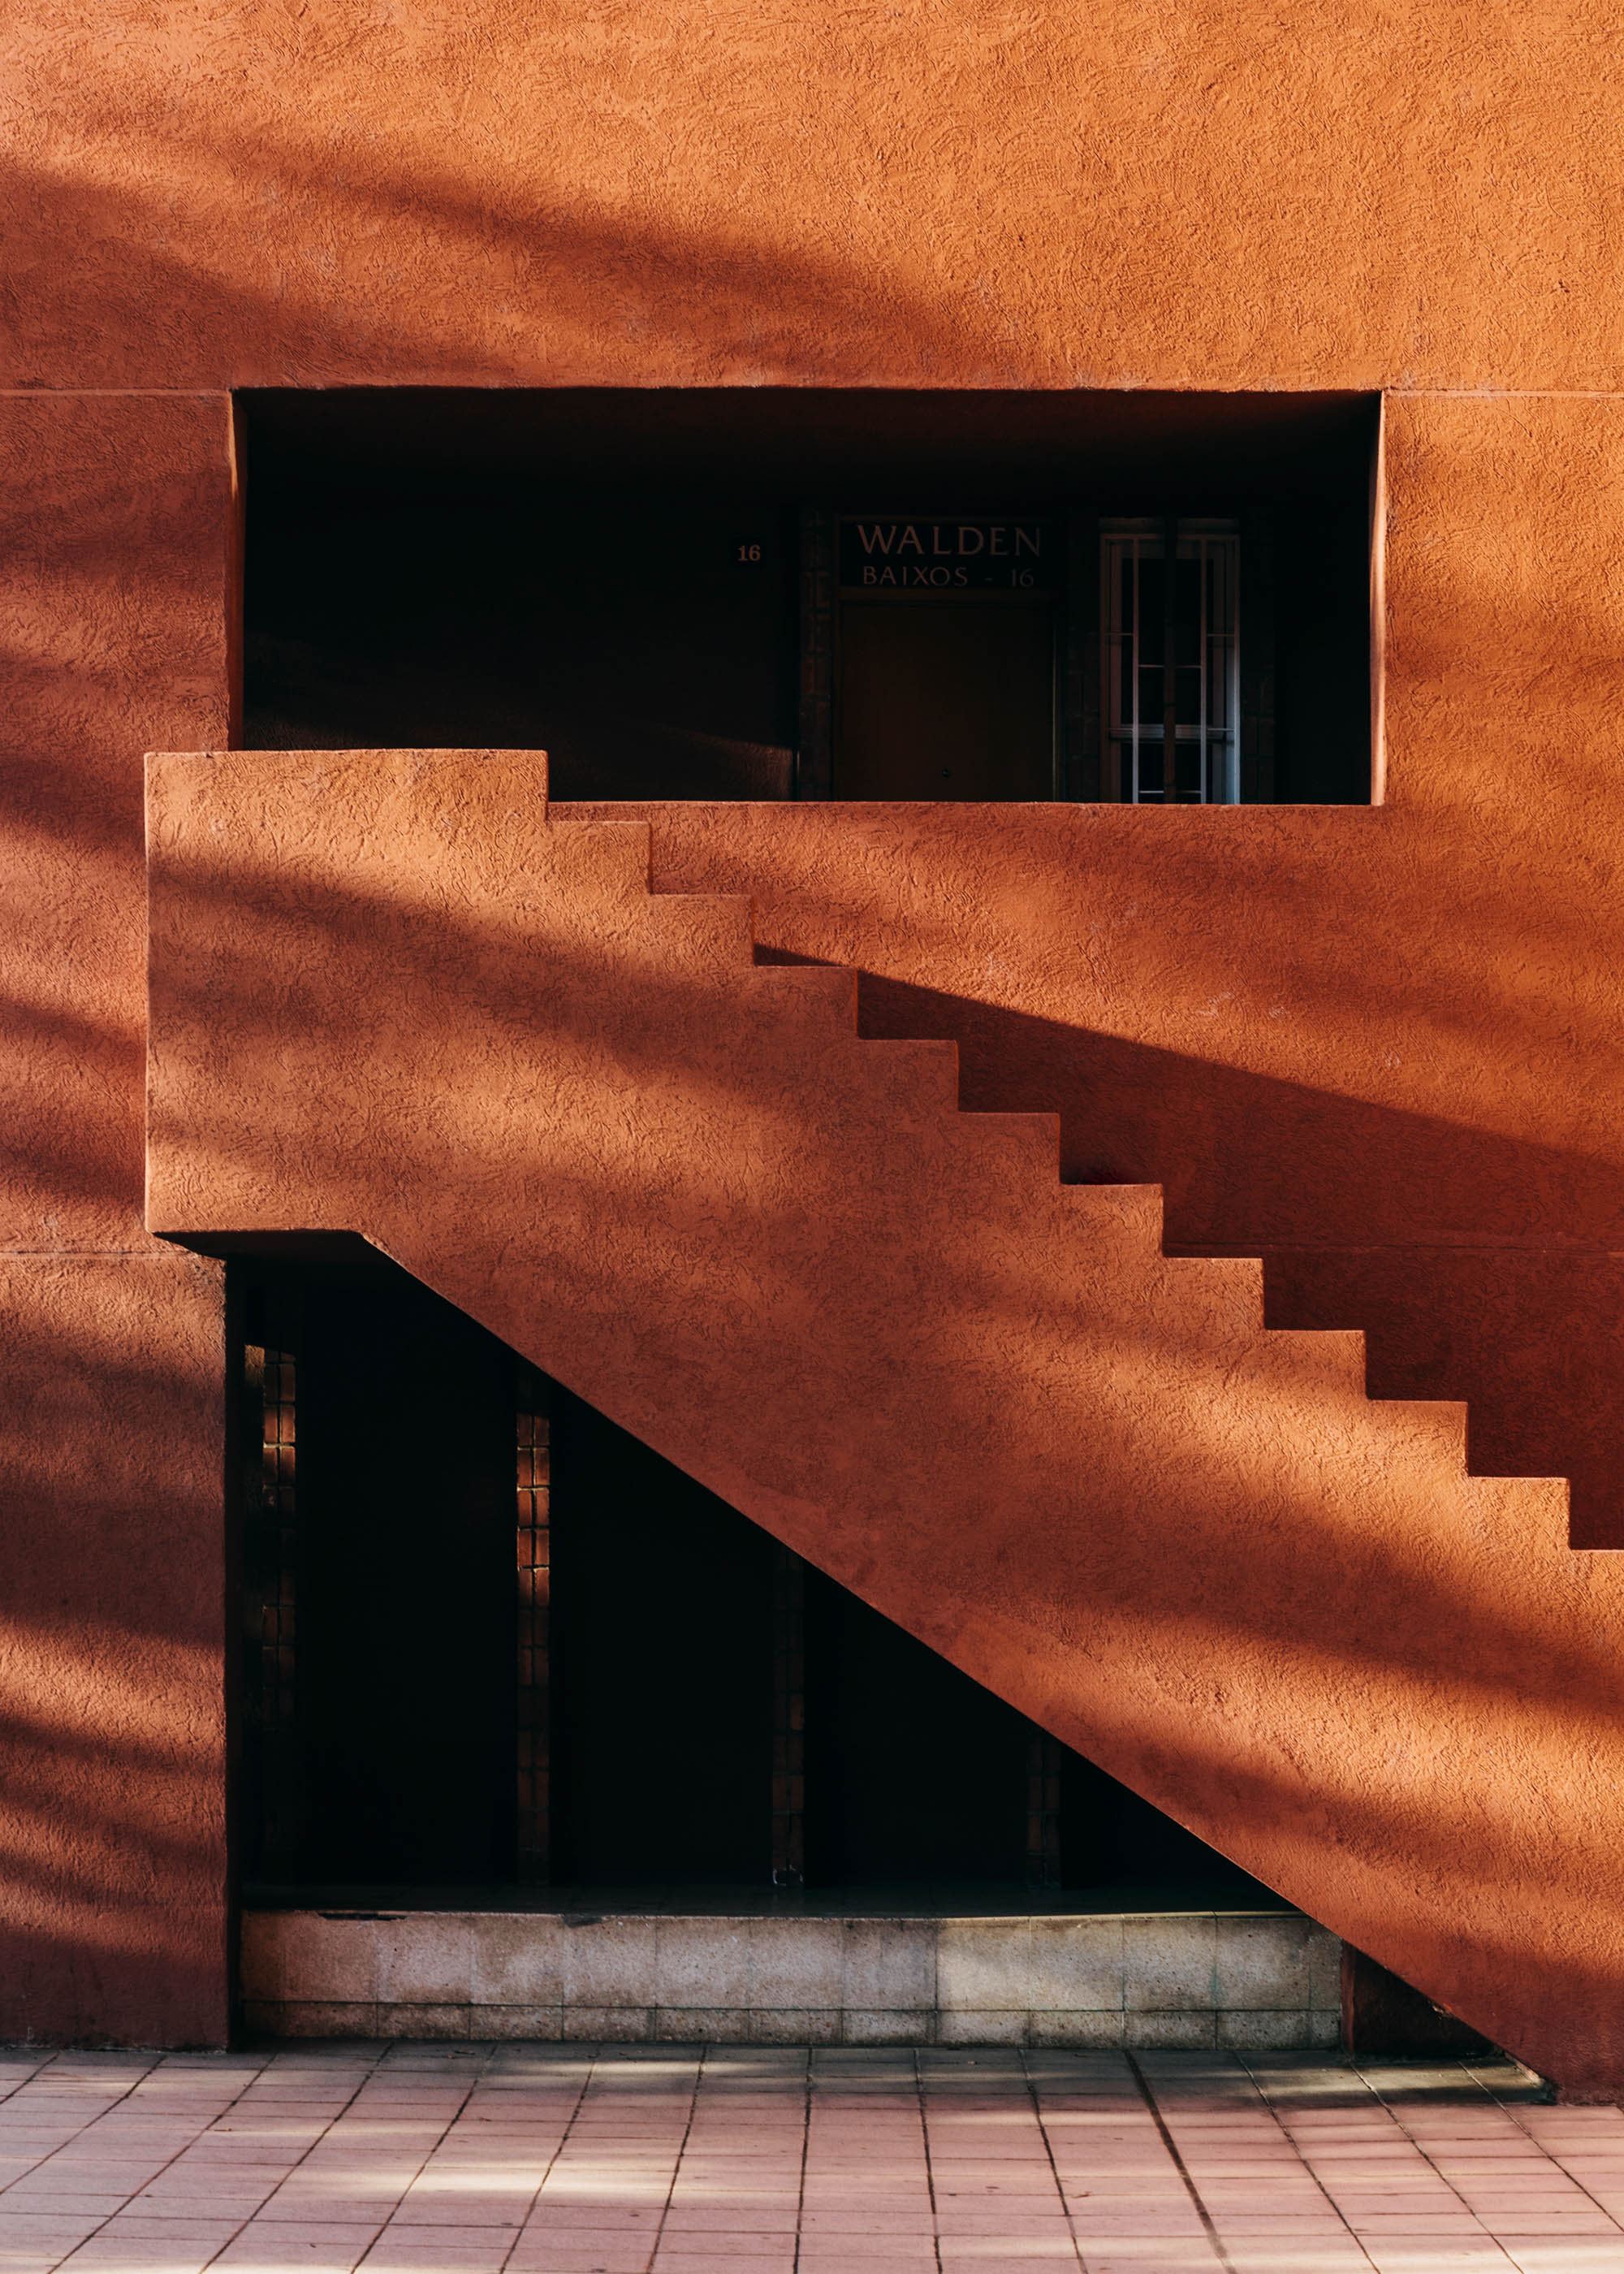 #editorial #monocle #architecture #bofill #walden #orange